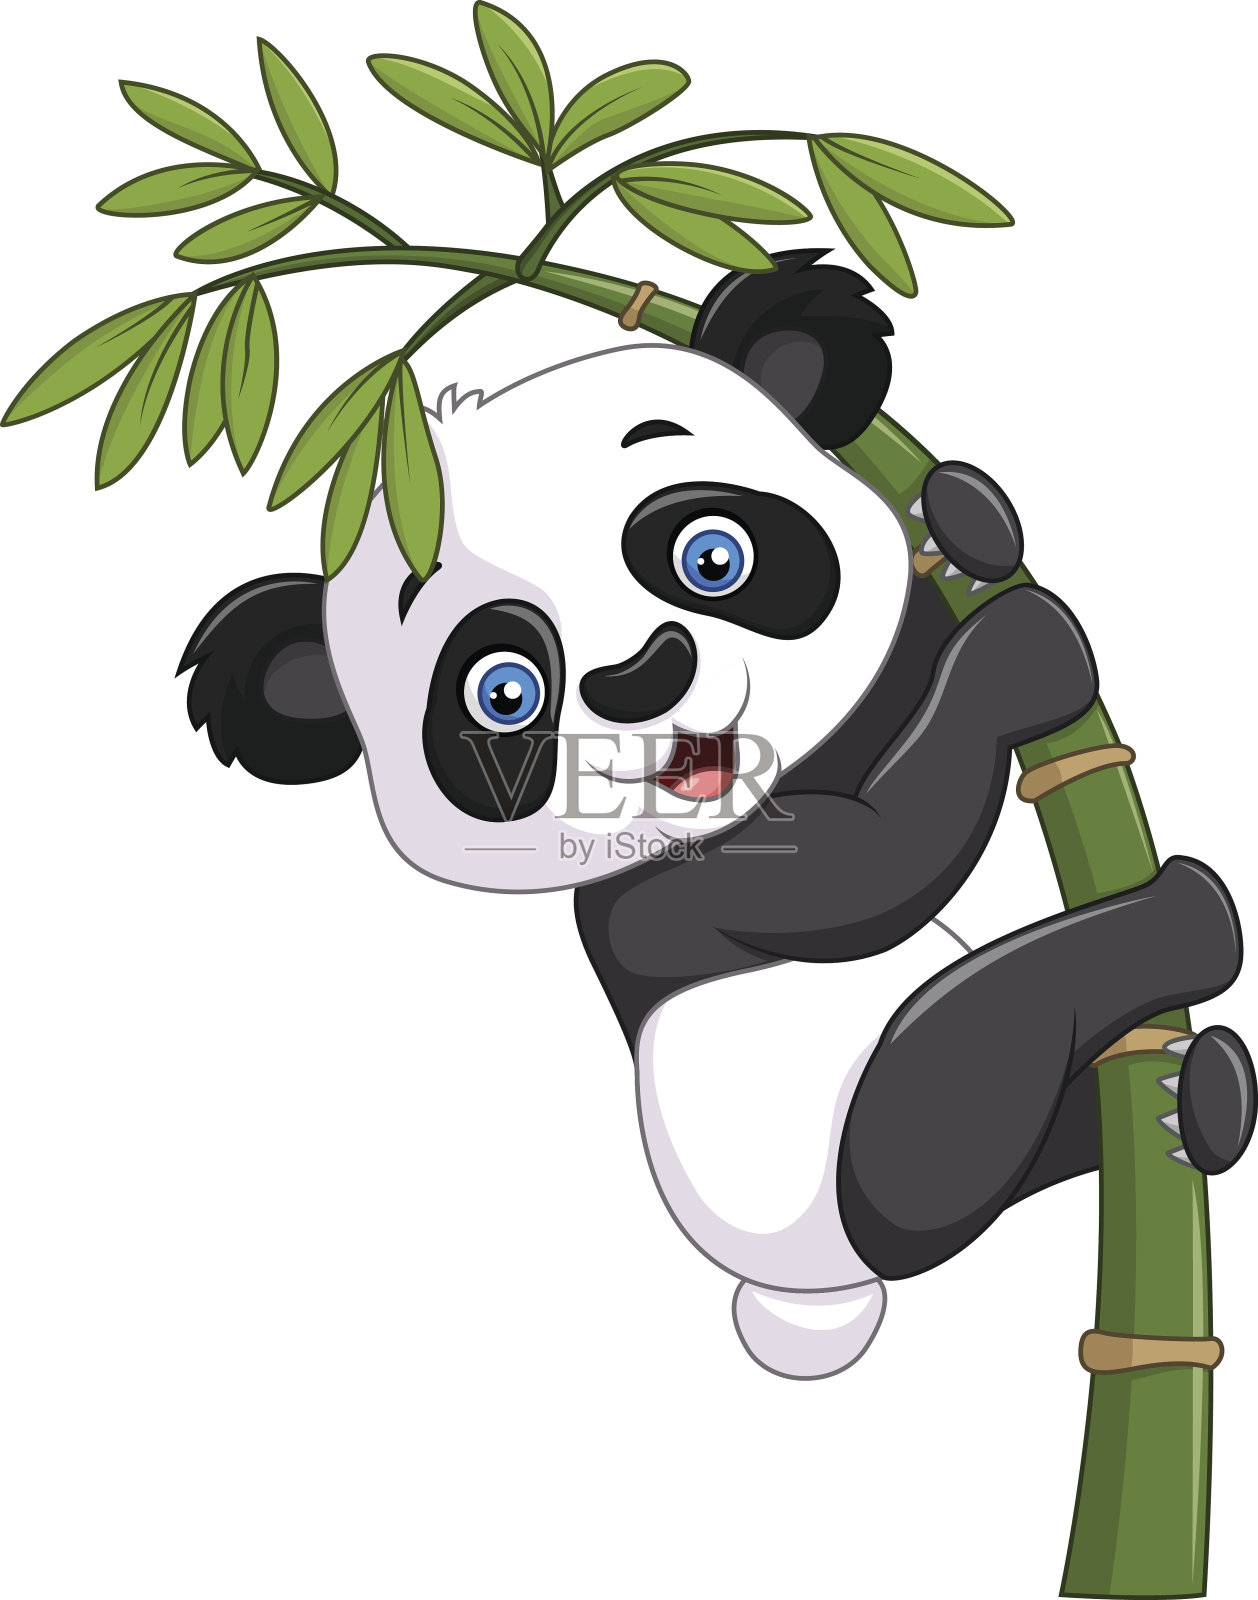 可爱有趣的熊猫宝宝挂在竹树上设计元素图片